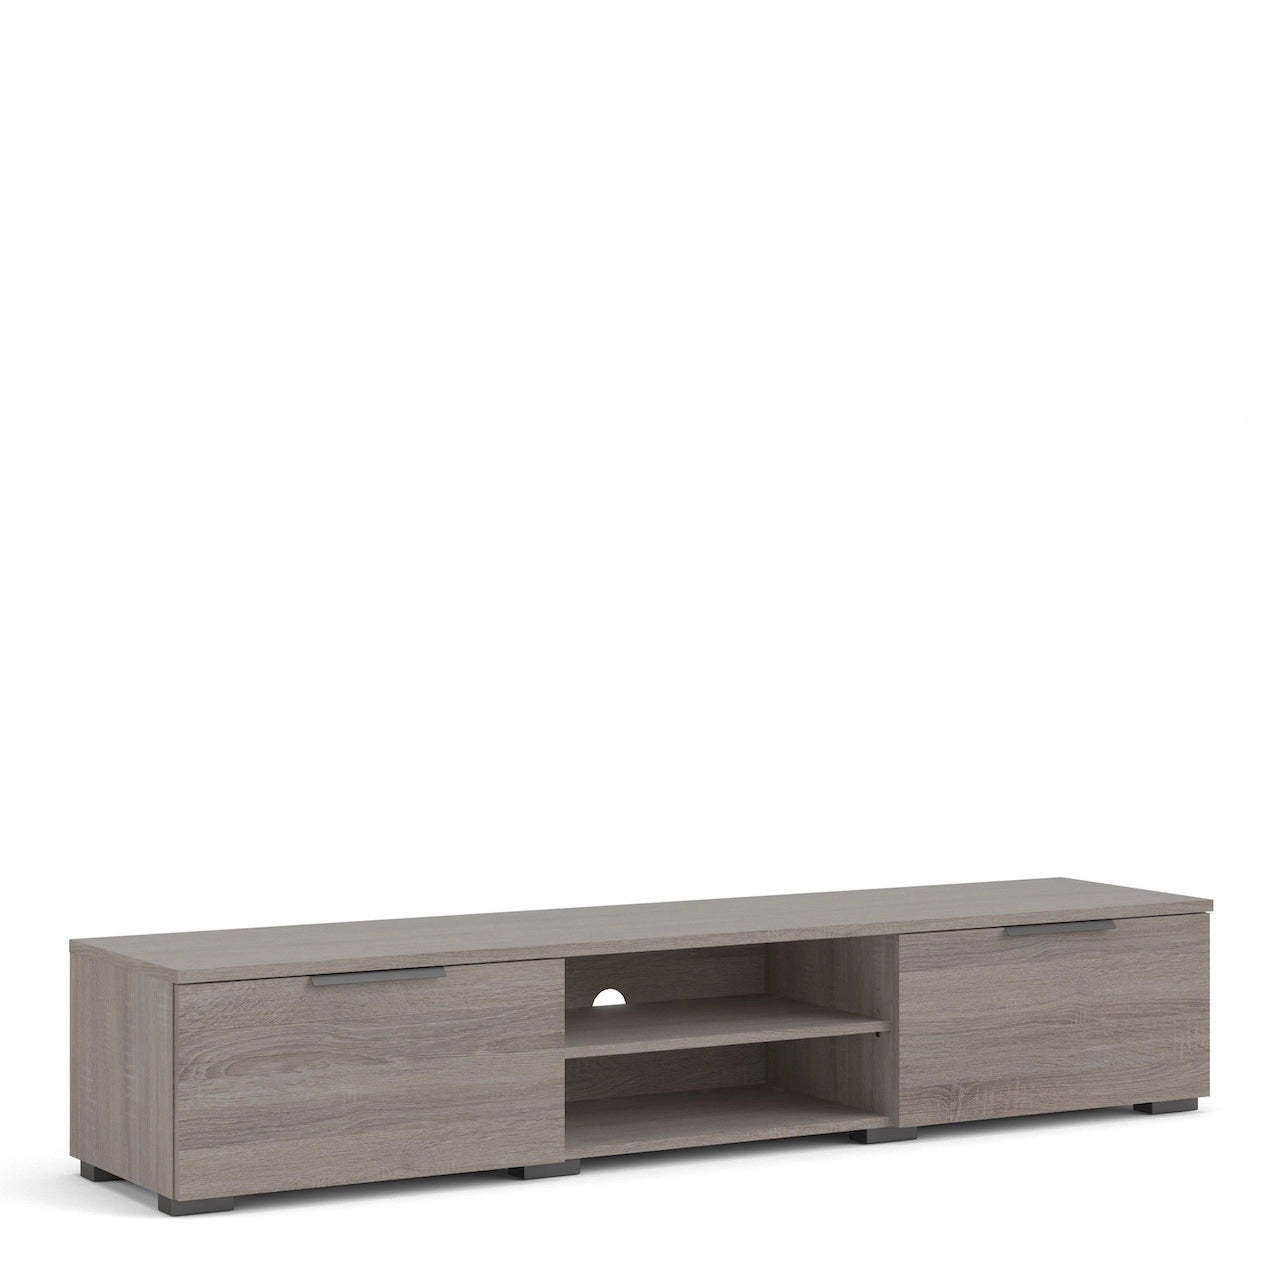 Furniture To Go Match TV Unit 2 Drawers 2 Shelf in Truffle Oak